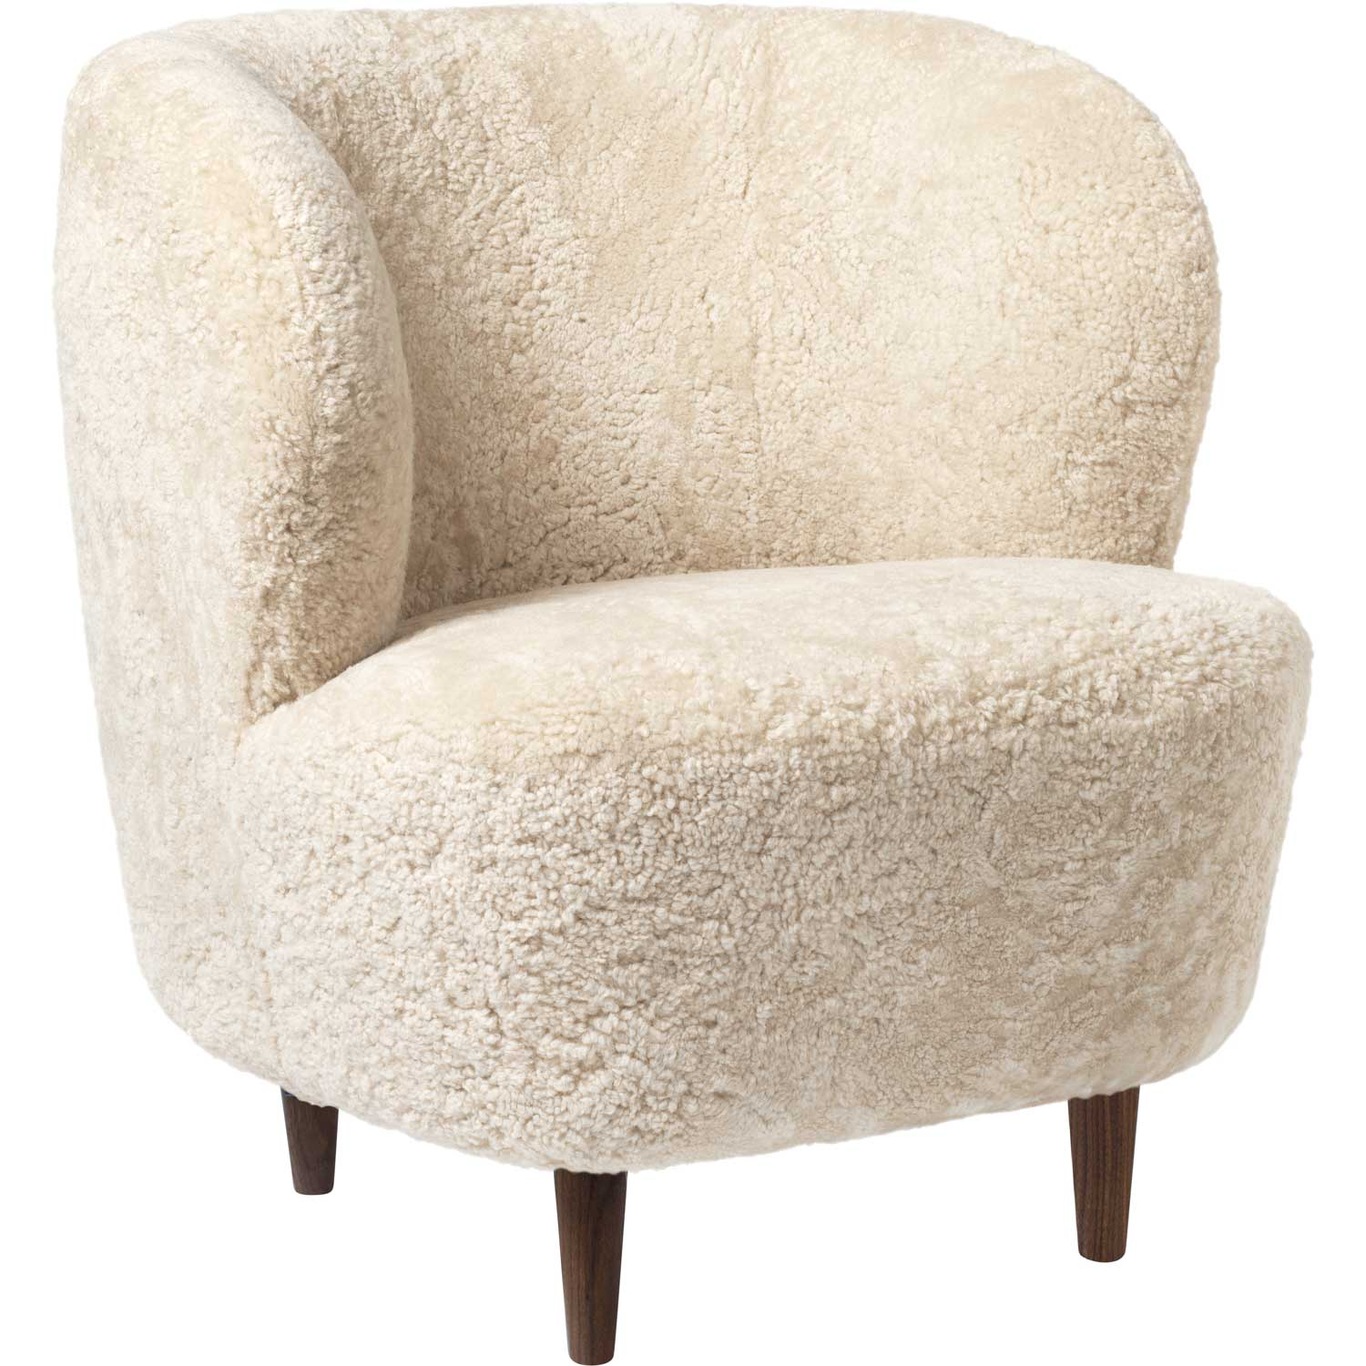 Stay Lounge Chair Sheepskin Moonlight/Walnut